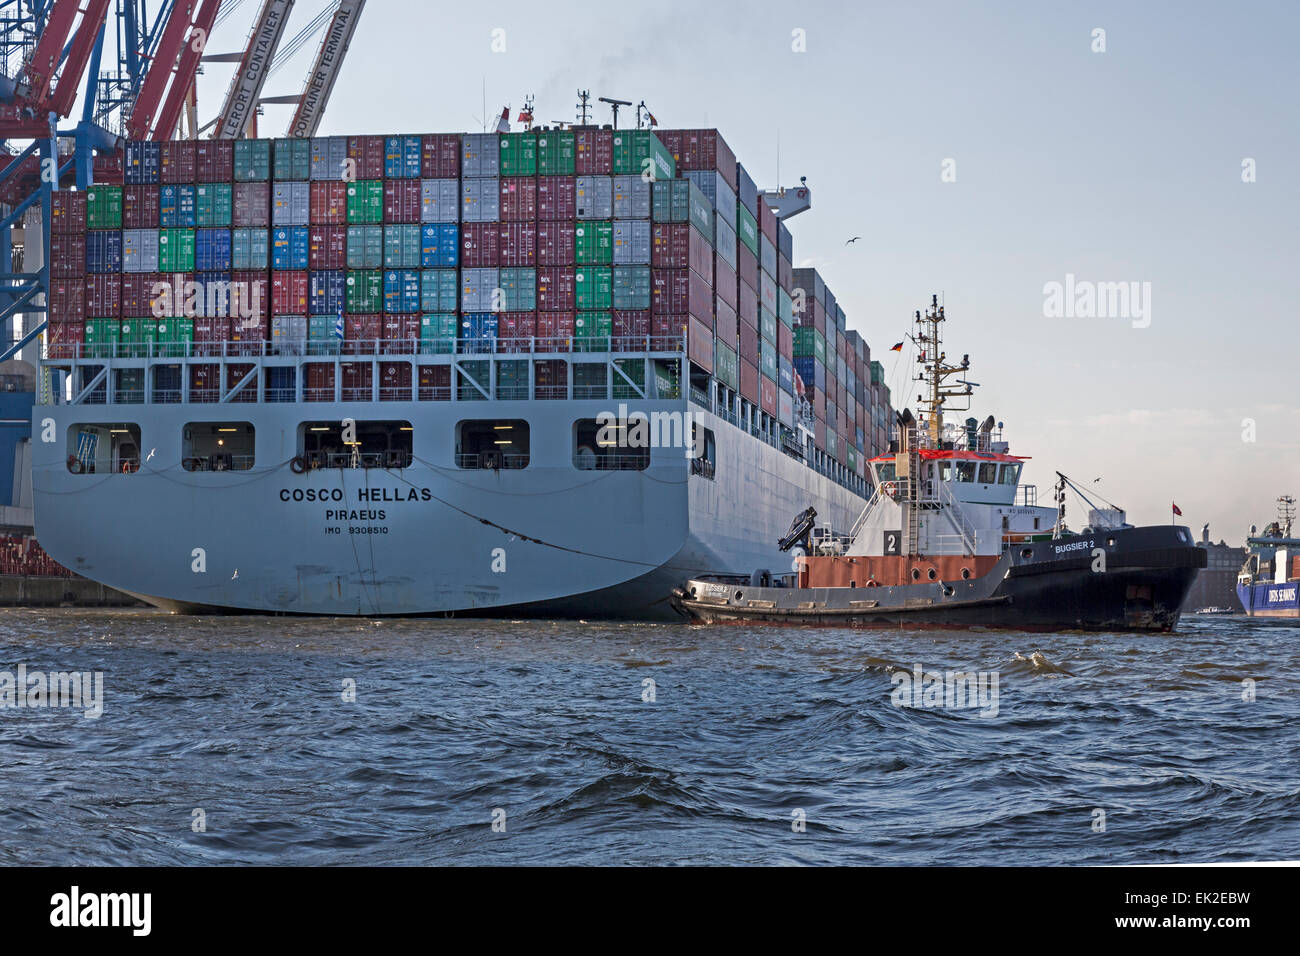 Containerschiff Cosco Hellas wird von Schlepper gezogen, Hamburger Hafen, Amburgo, Deutschland, Europa / COSCO Container Hel Foto Stock